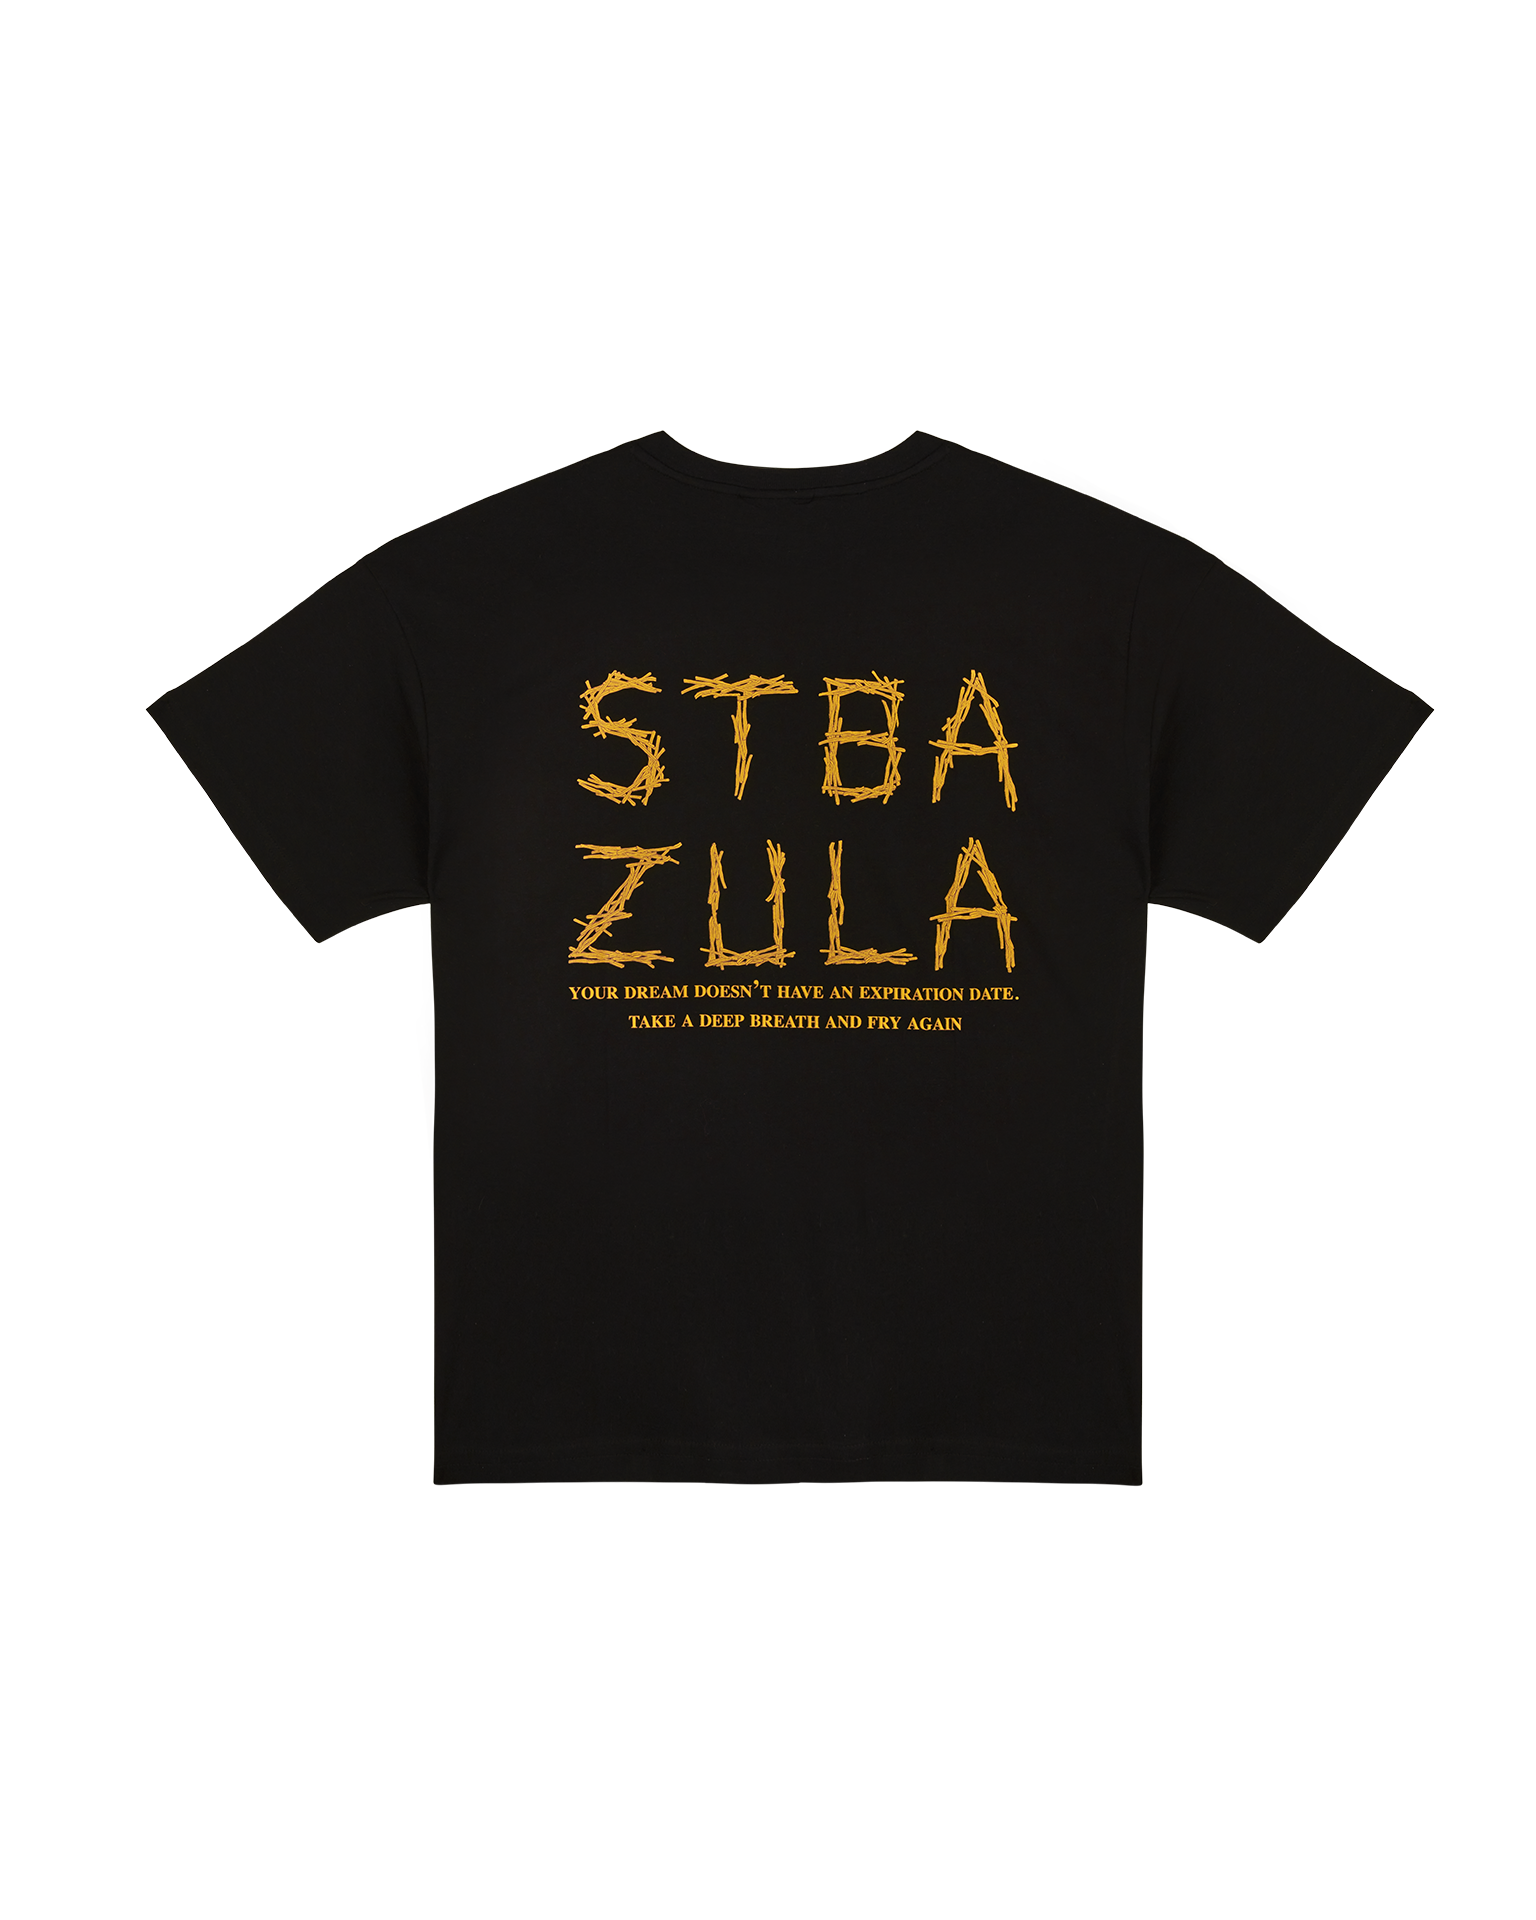 STBA X ZULA T-Shirt